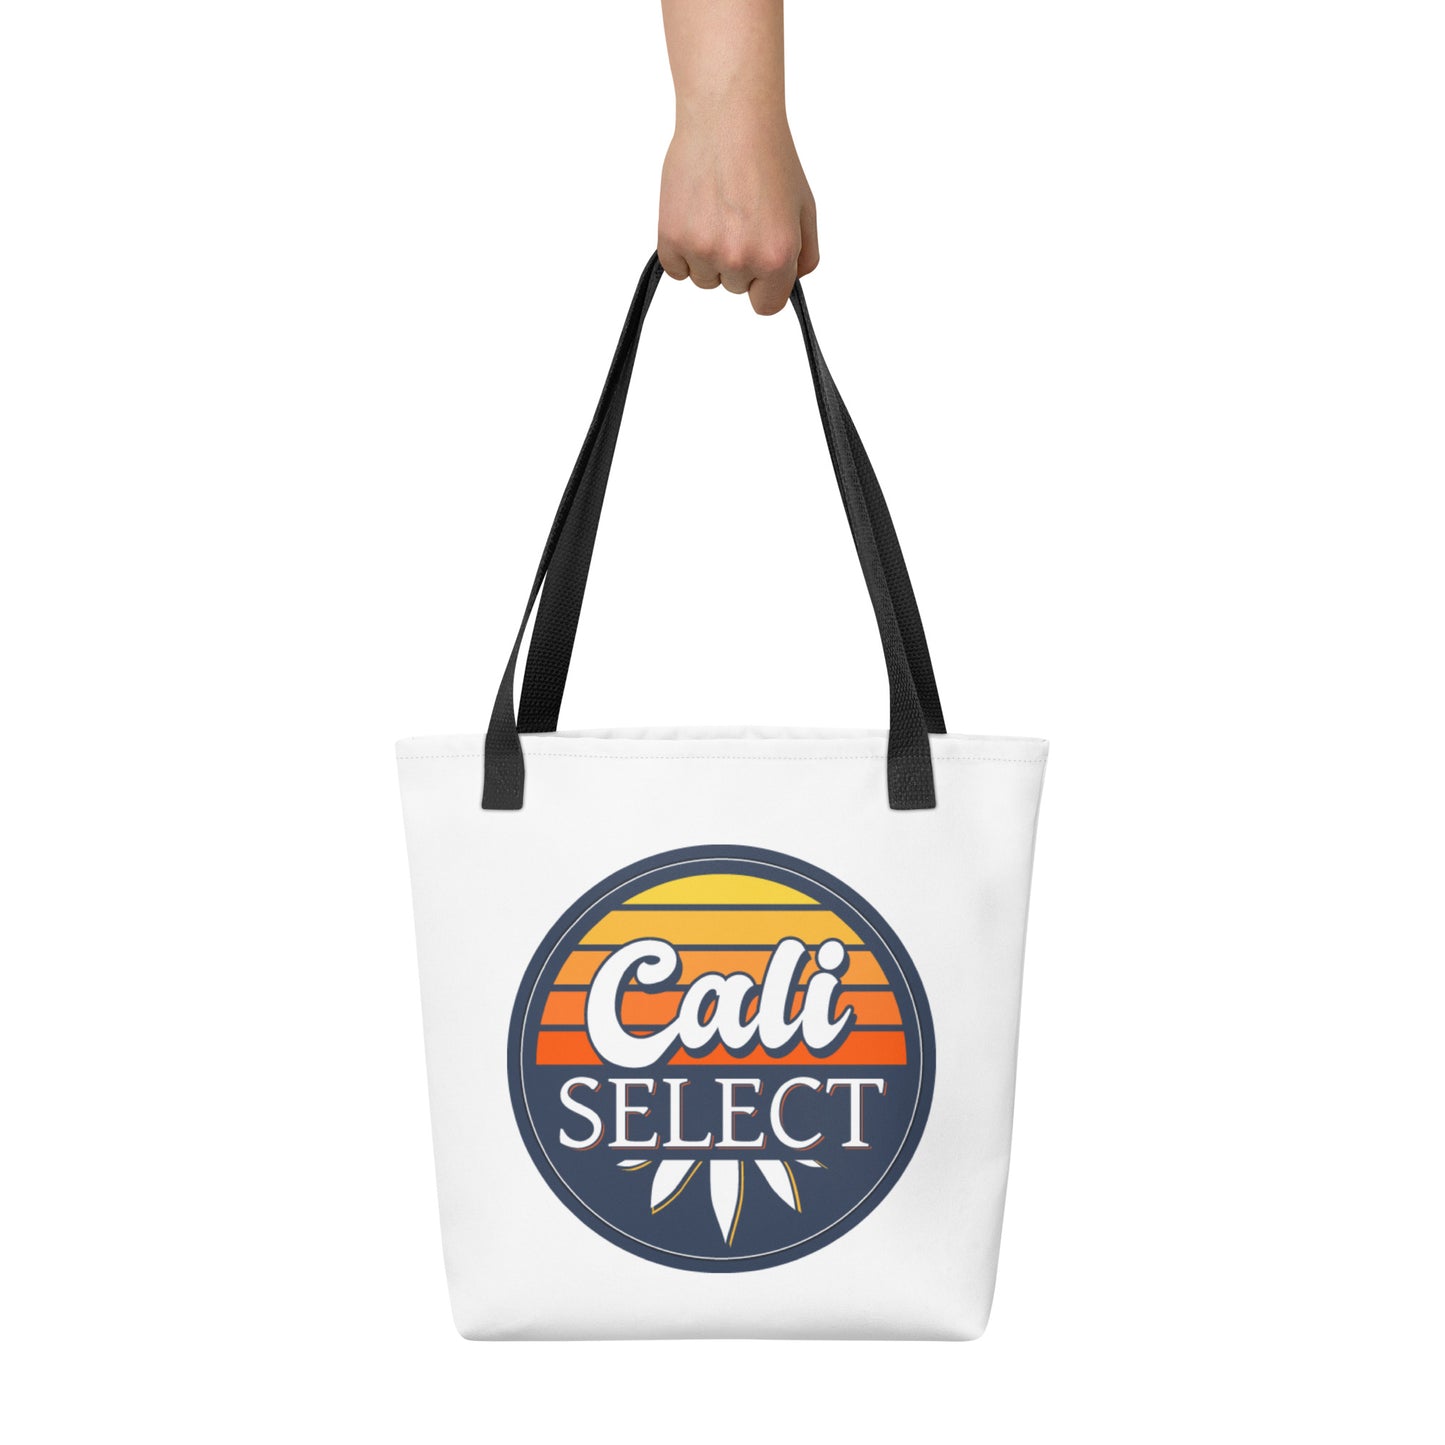 Cali Select Tote bag